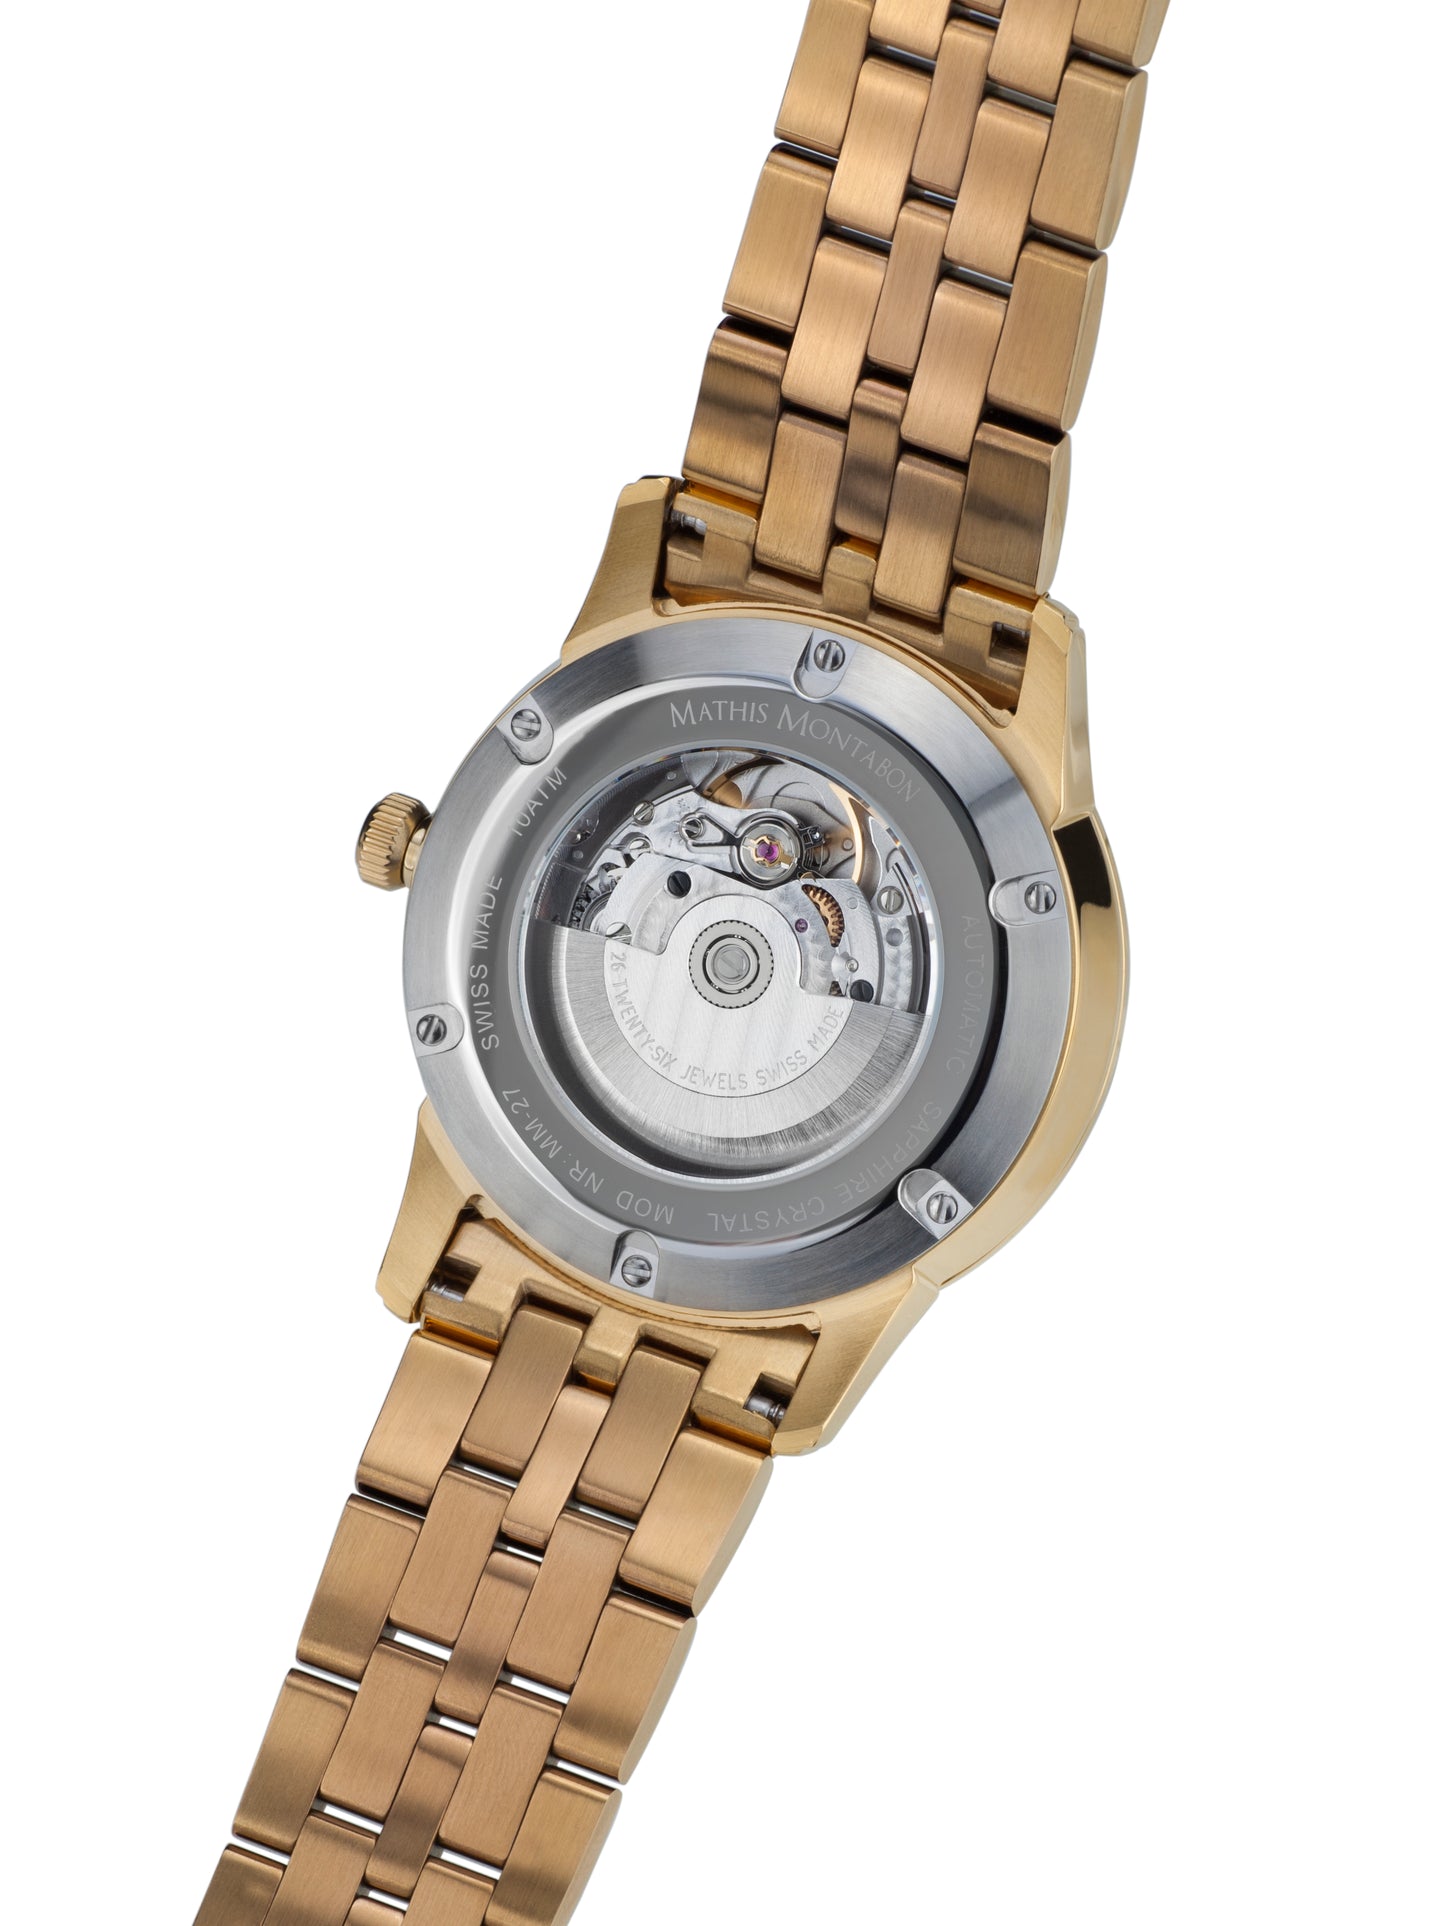 Automatic watches — Elégance de Suisse — Mathis Montabon — Gold IP